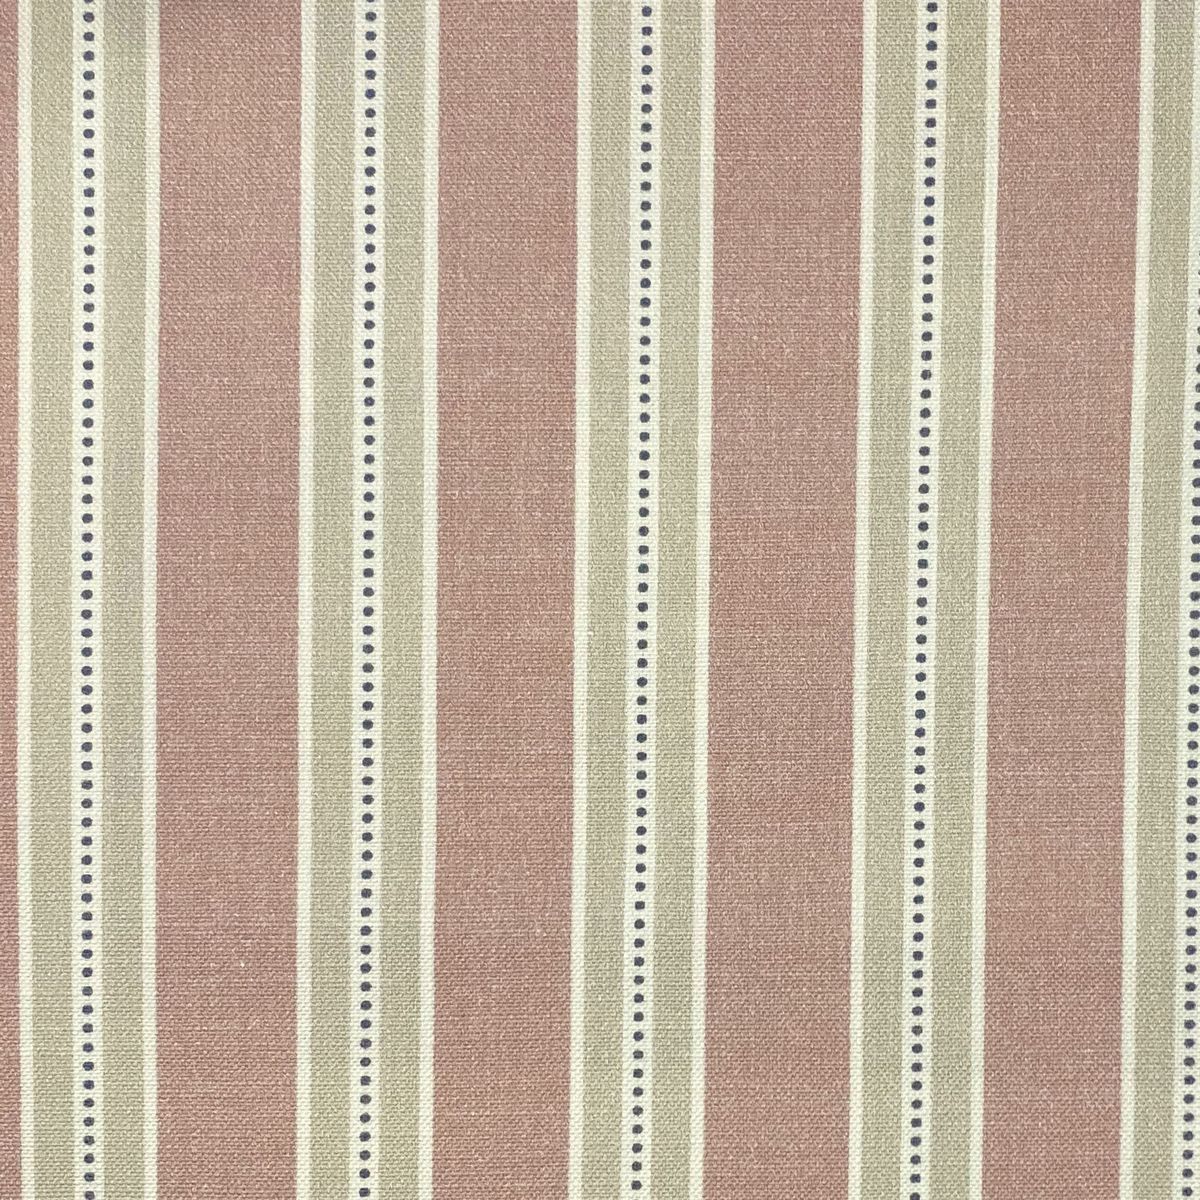 Drayton Blush Fabric by Chatham Glyn